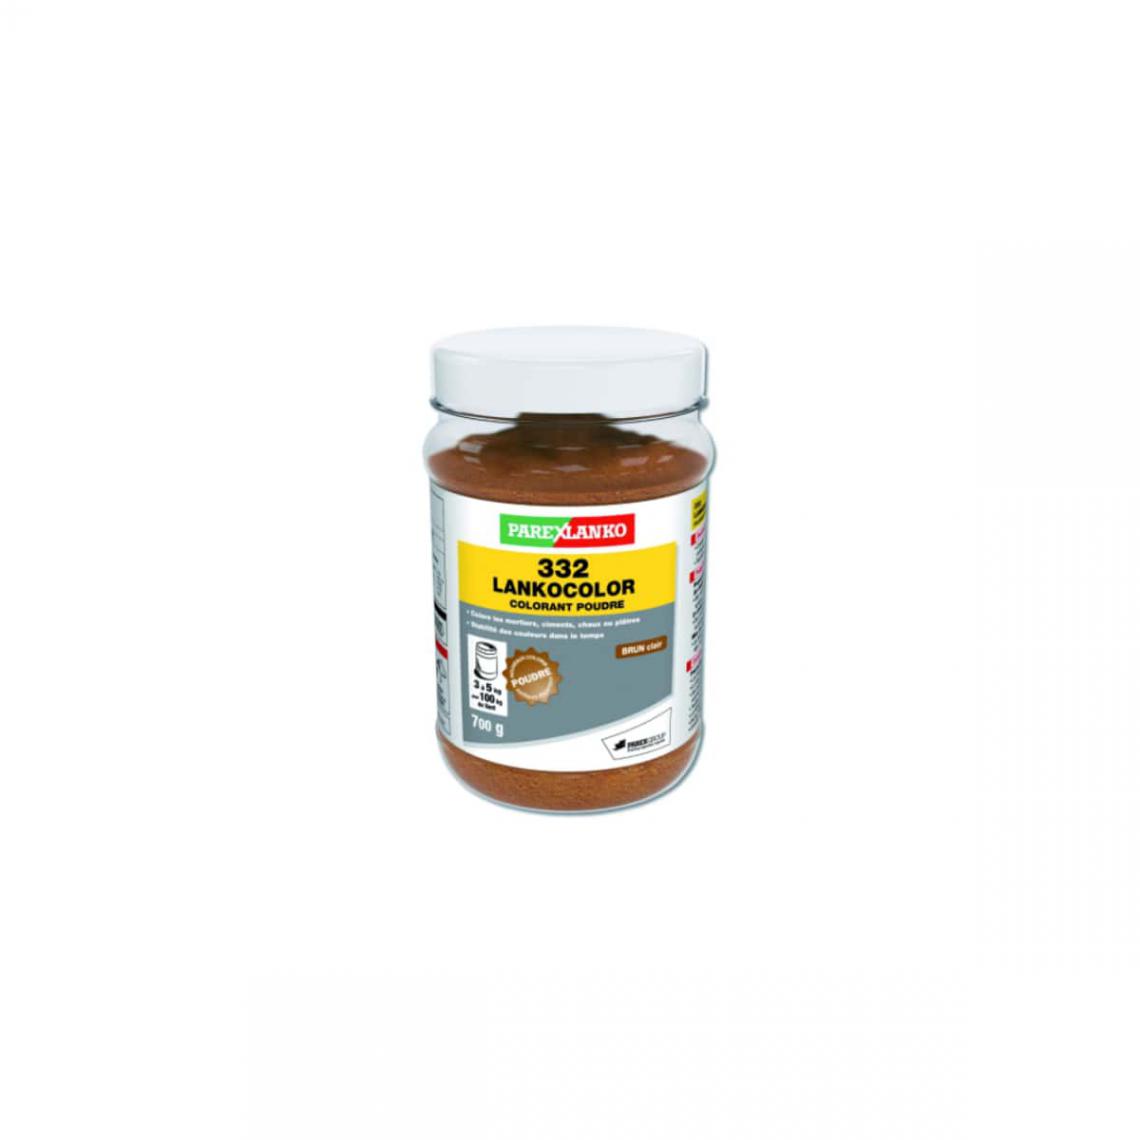 Soloplast - Colorant en poudre PAREXLANKO LANKOCOLOR brun clair - 700g - L332BRC700 - Peinture extérieure